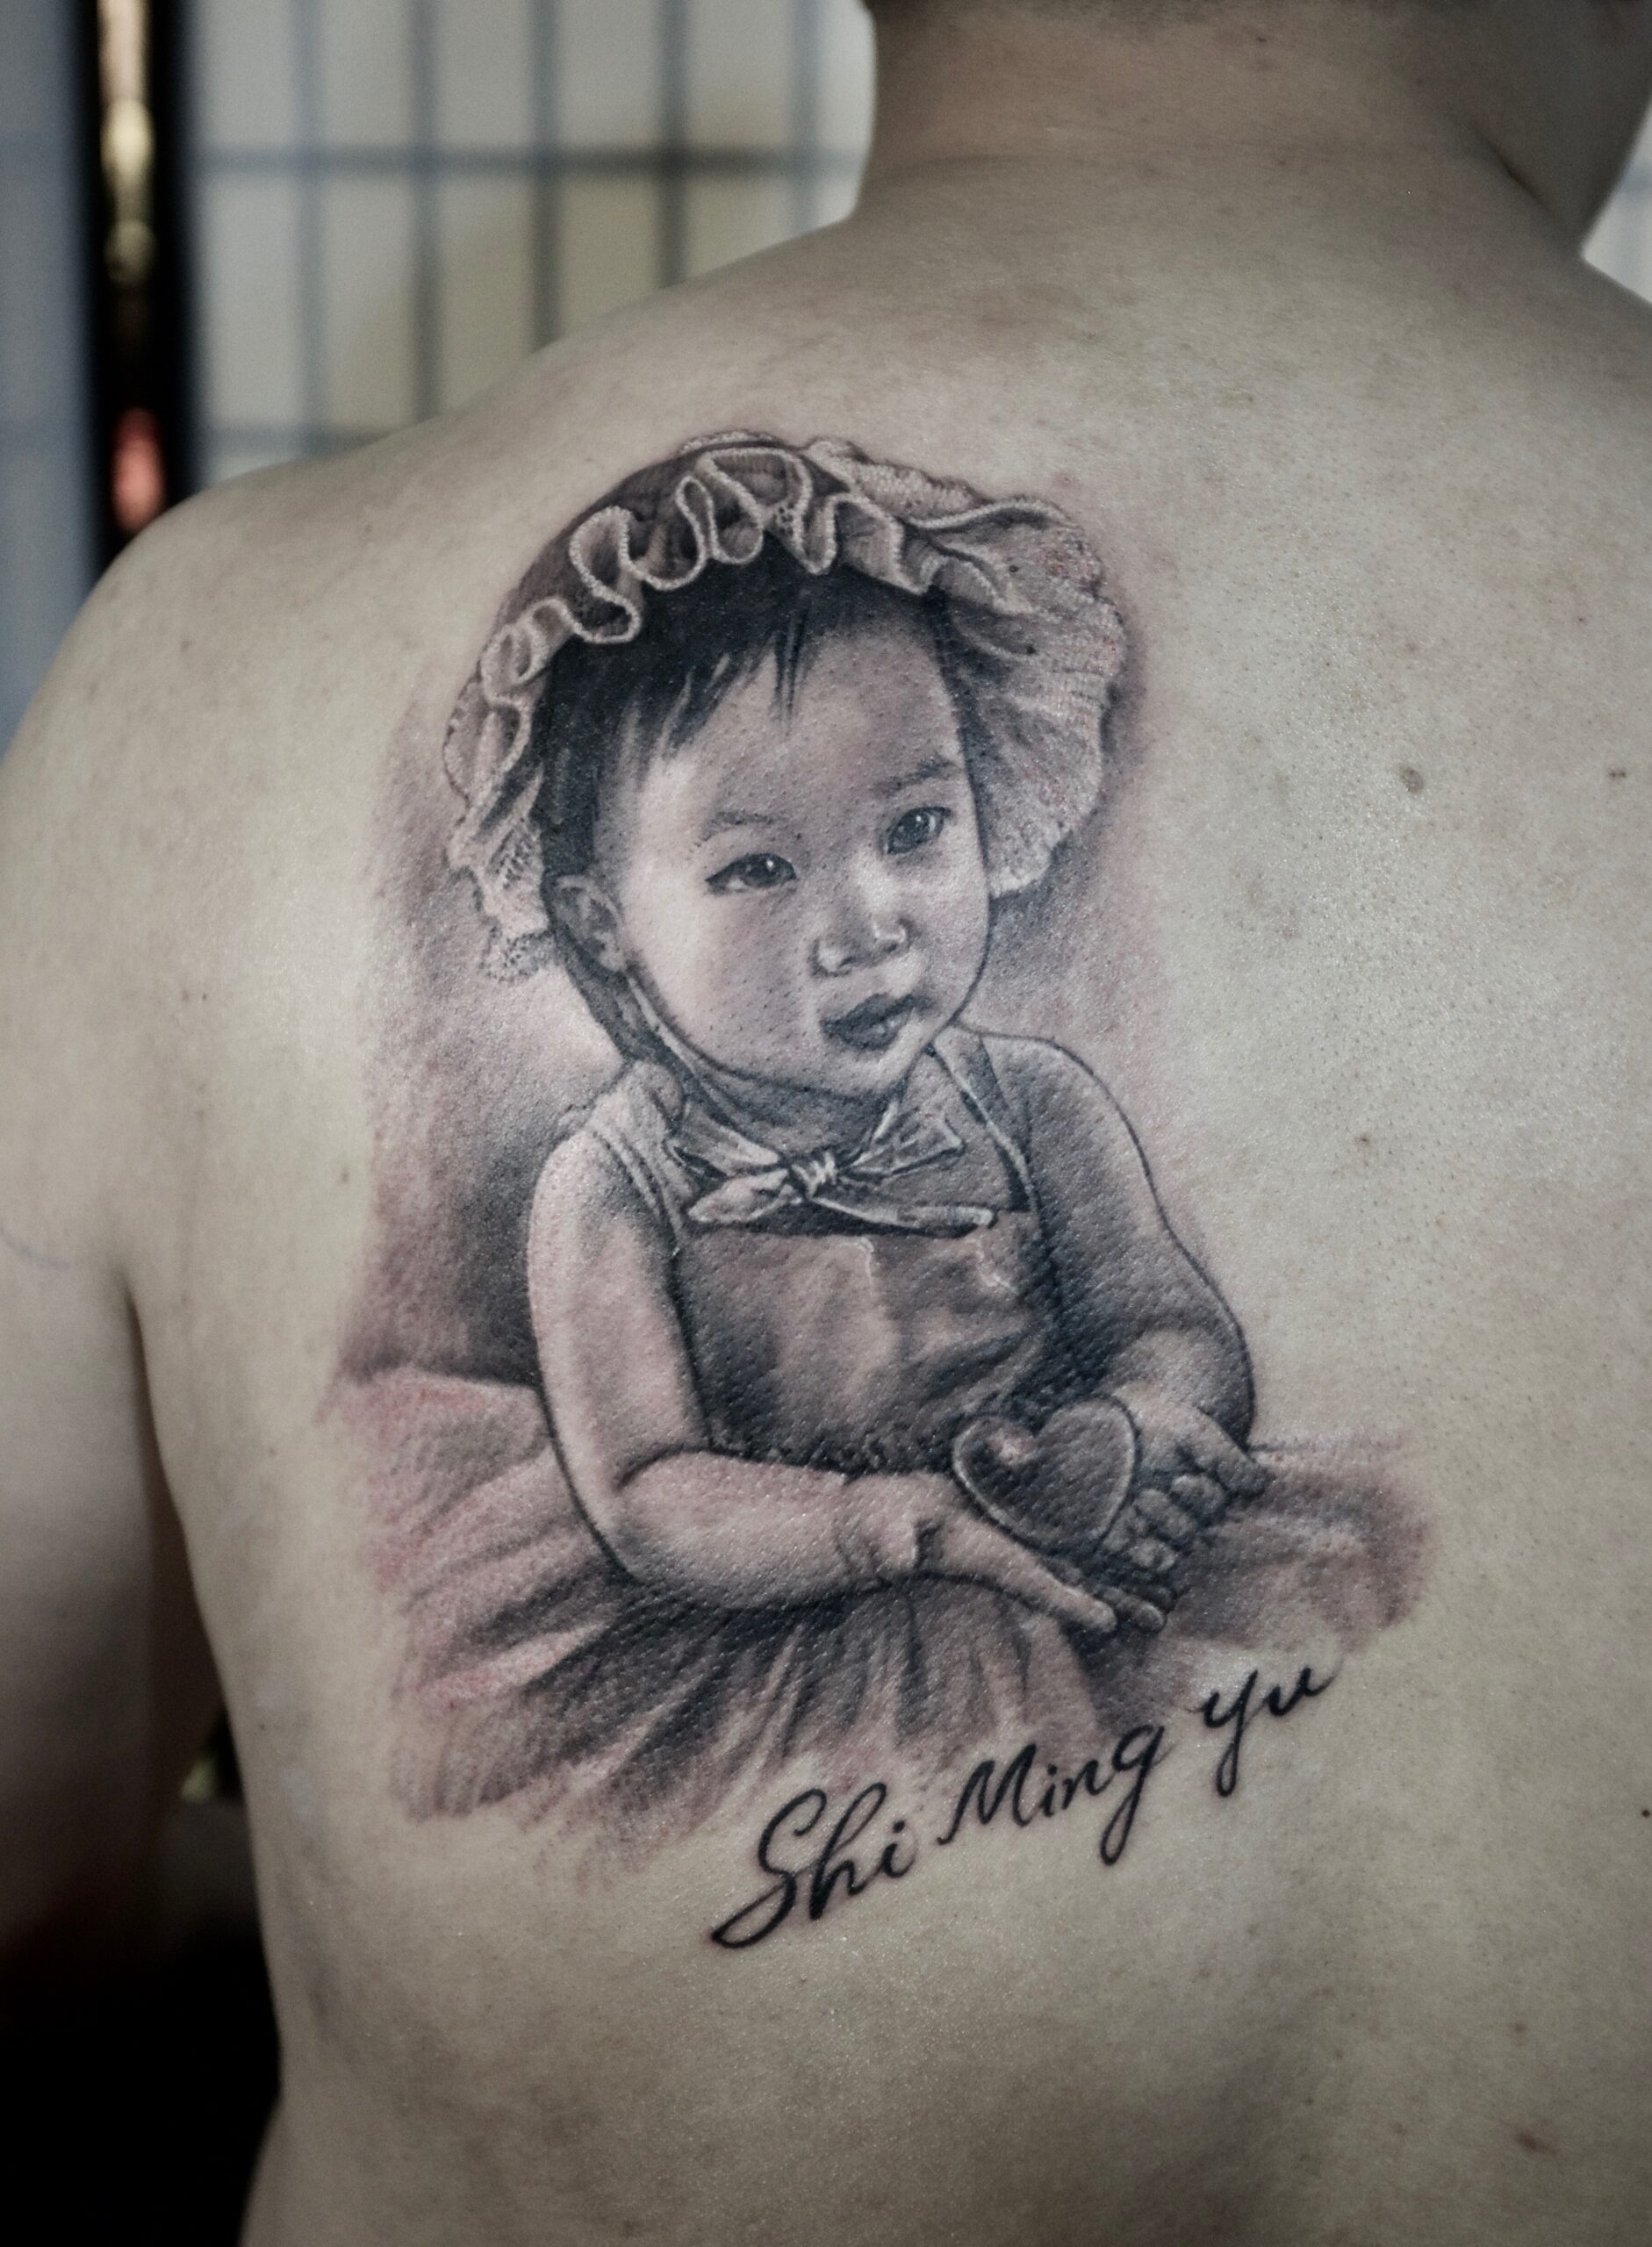 zhuo dan ting tattoo work kid portrait tattoo卓丹婷纹身作品 孩子肖像纹身 1